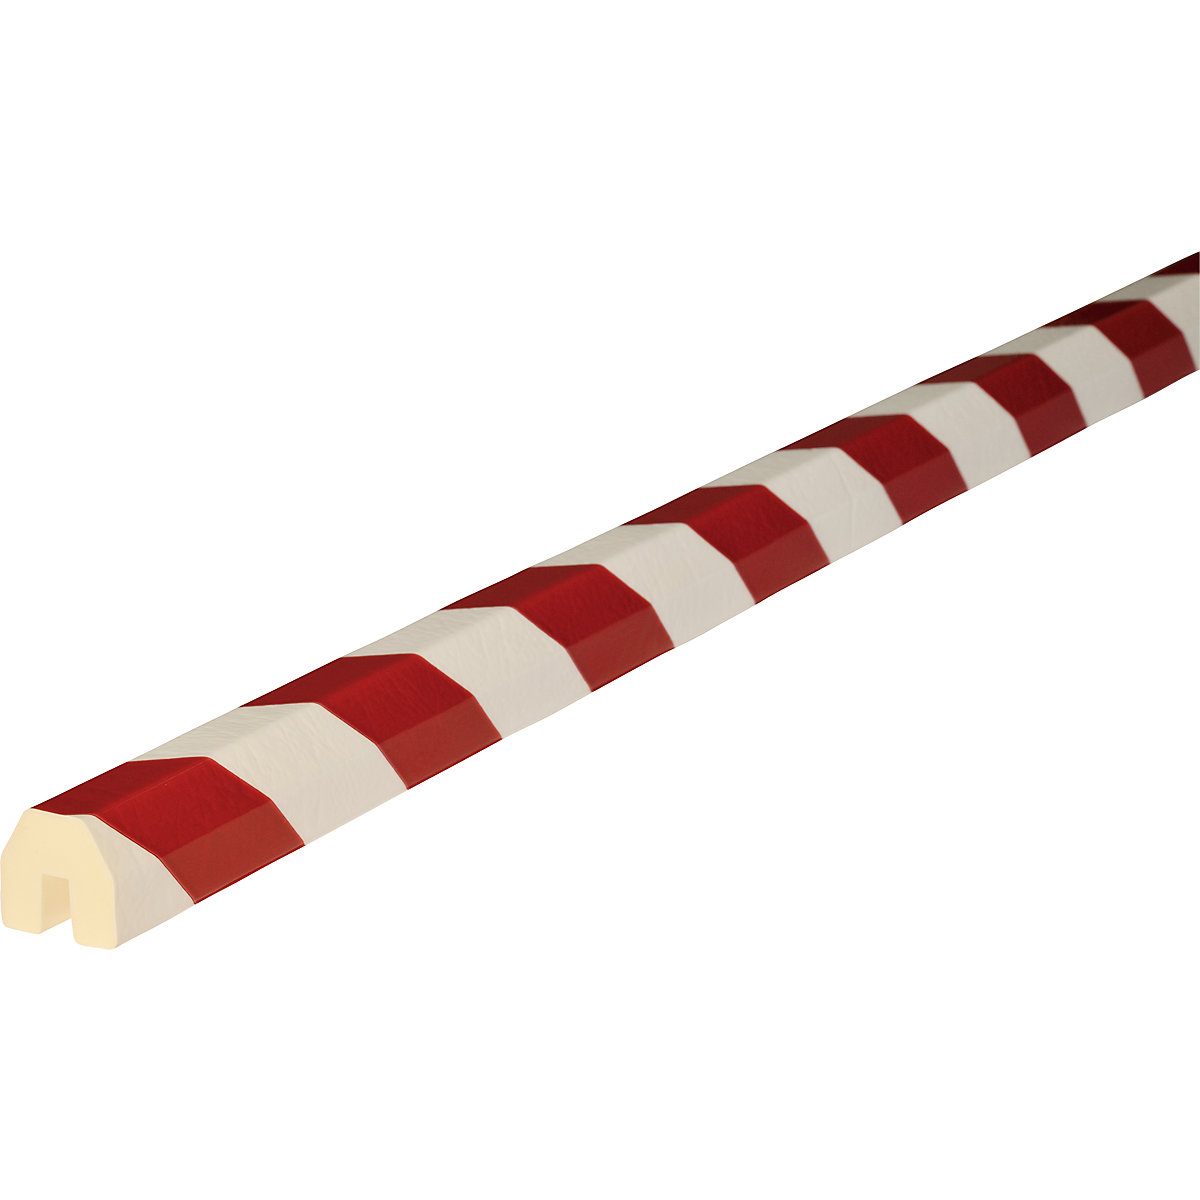 Protection des arêtes Knuffi® – SHG, type BB, 1 rouleau de 50 m, rouge/blanc